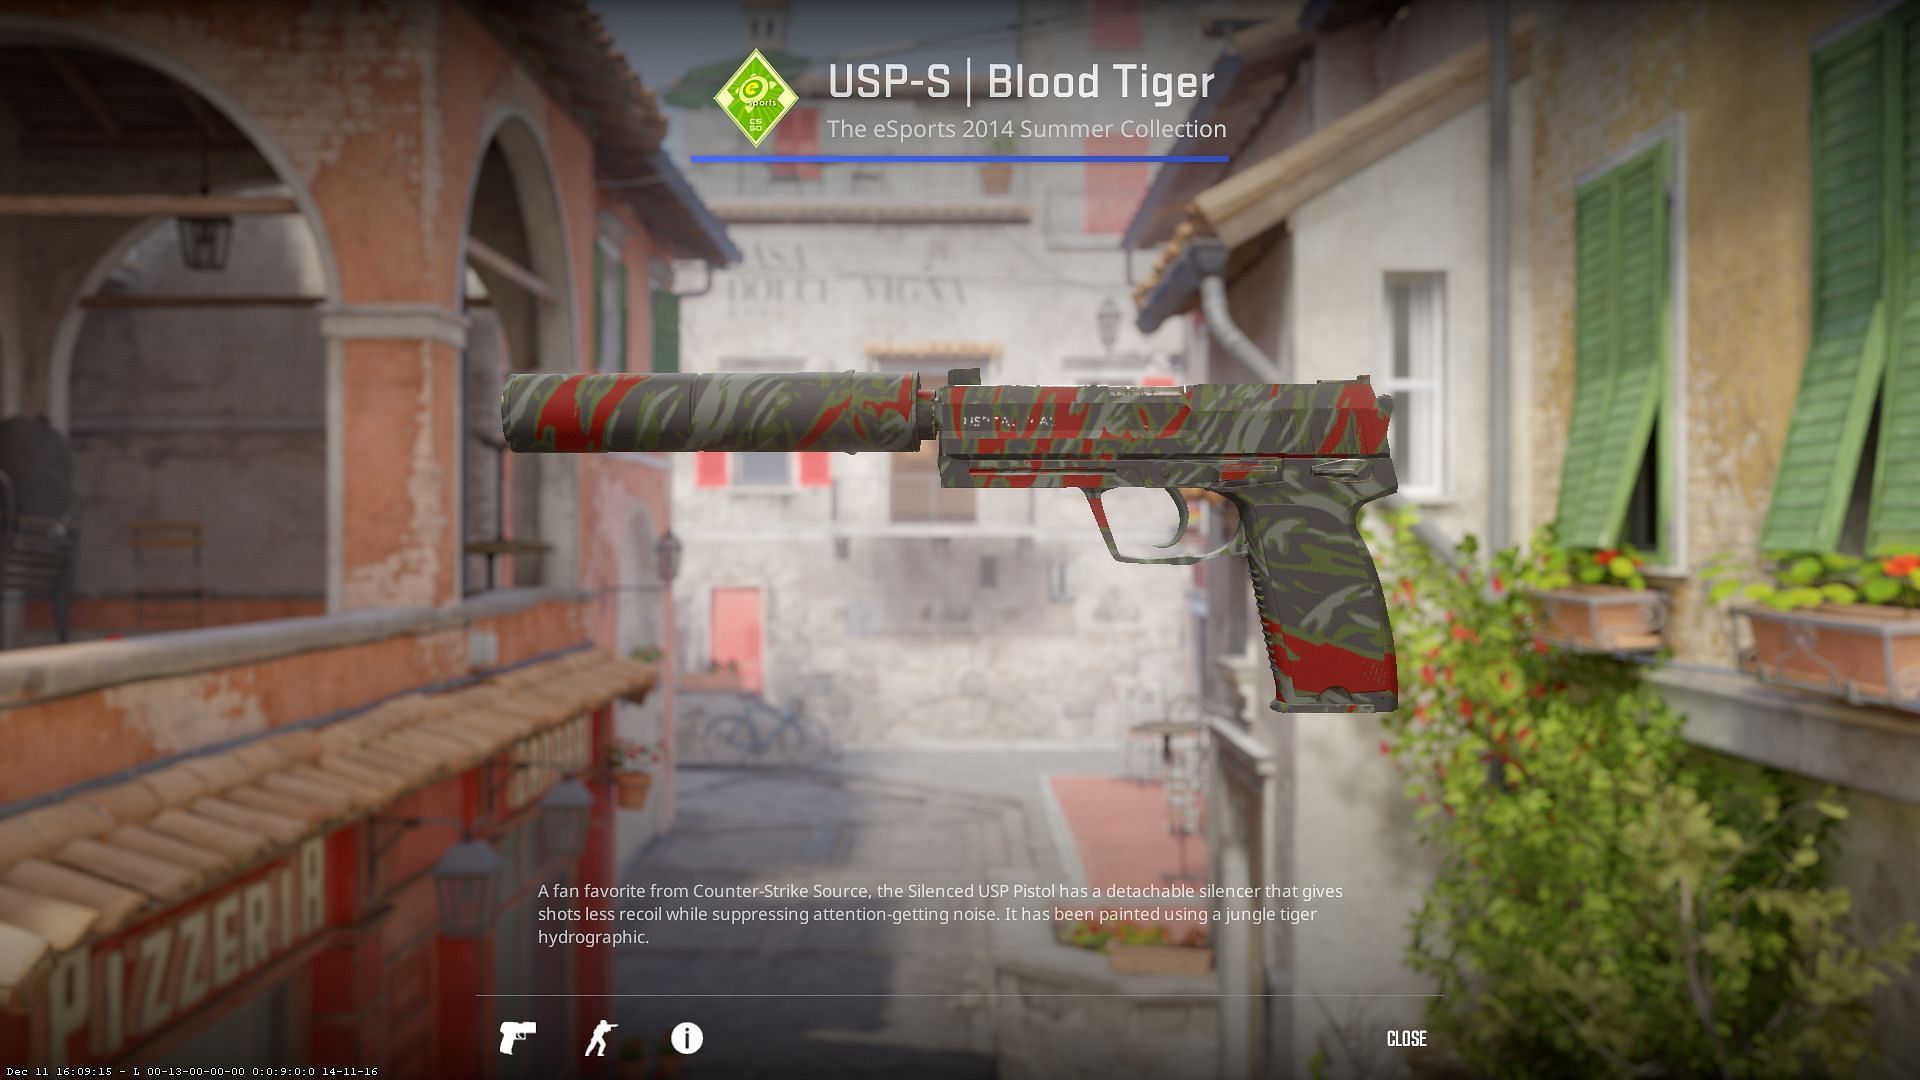 USP-S Blood Tiger (Image via Valve)